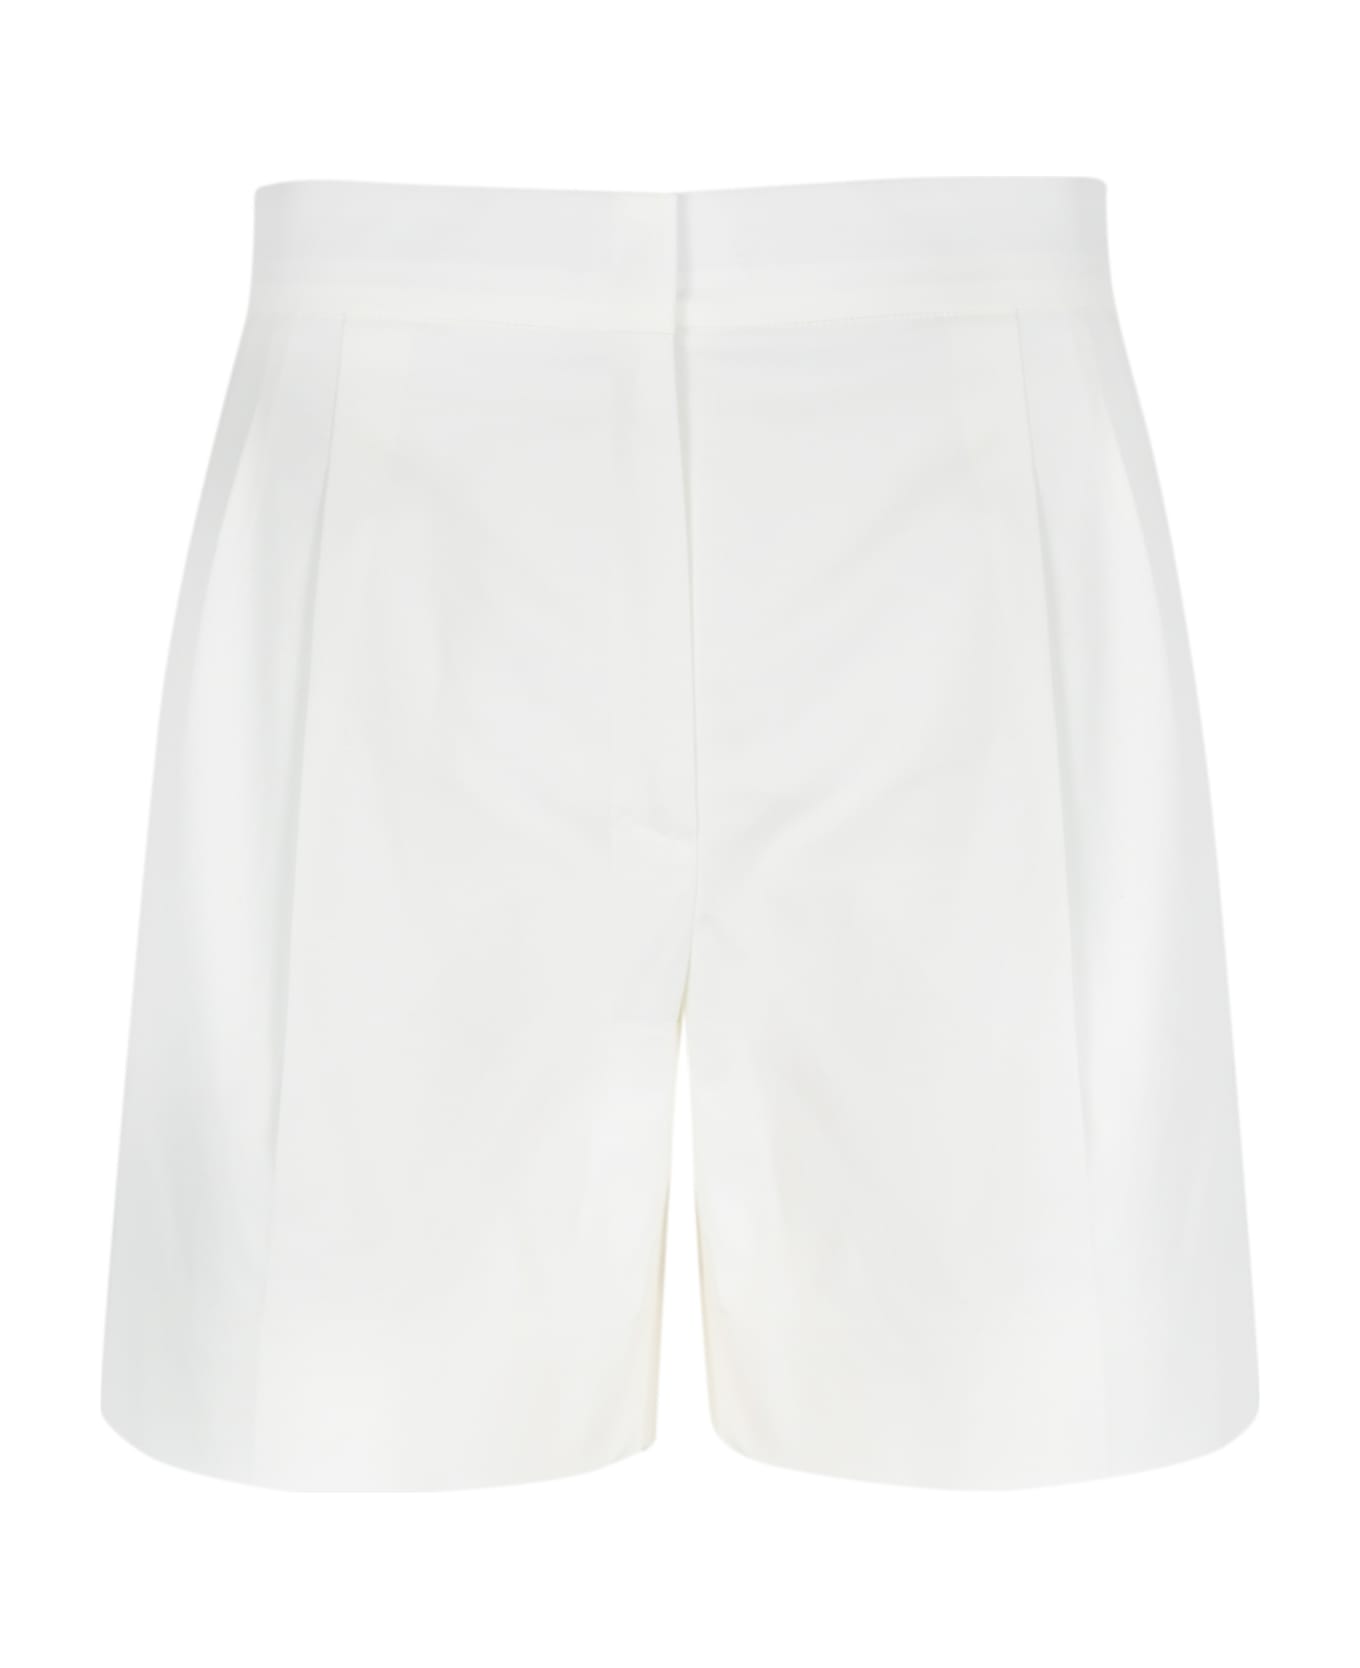 Max Mara Studio White 'adria' Cotton Shorts - Bianco ショートパンツ